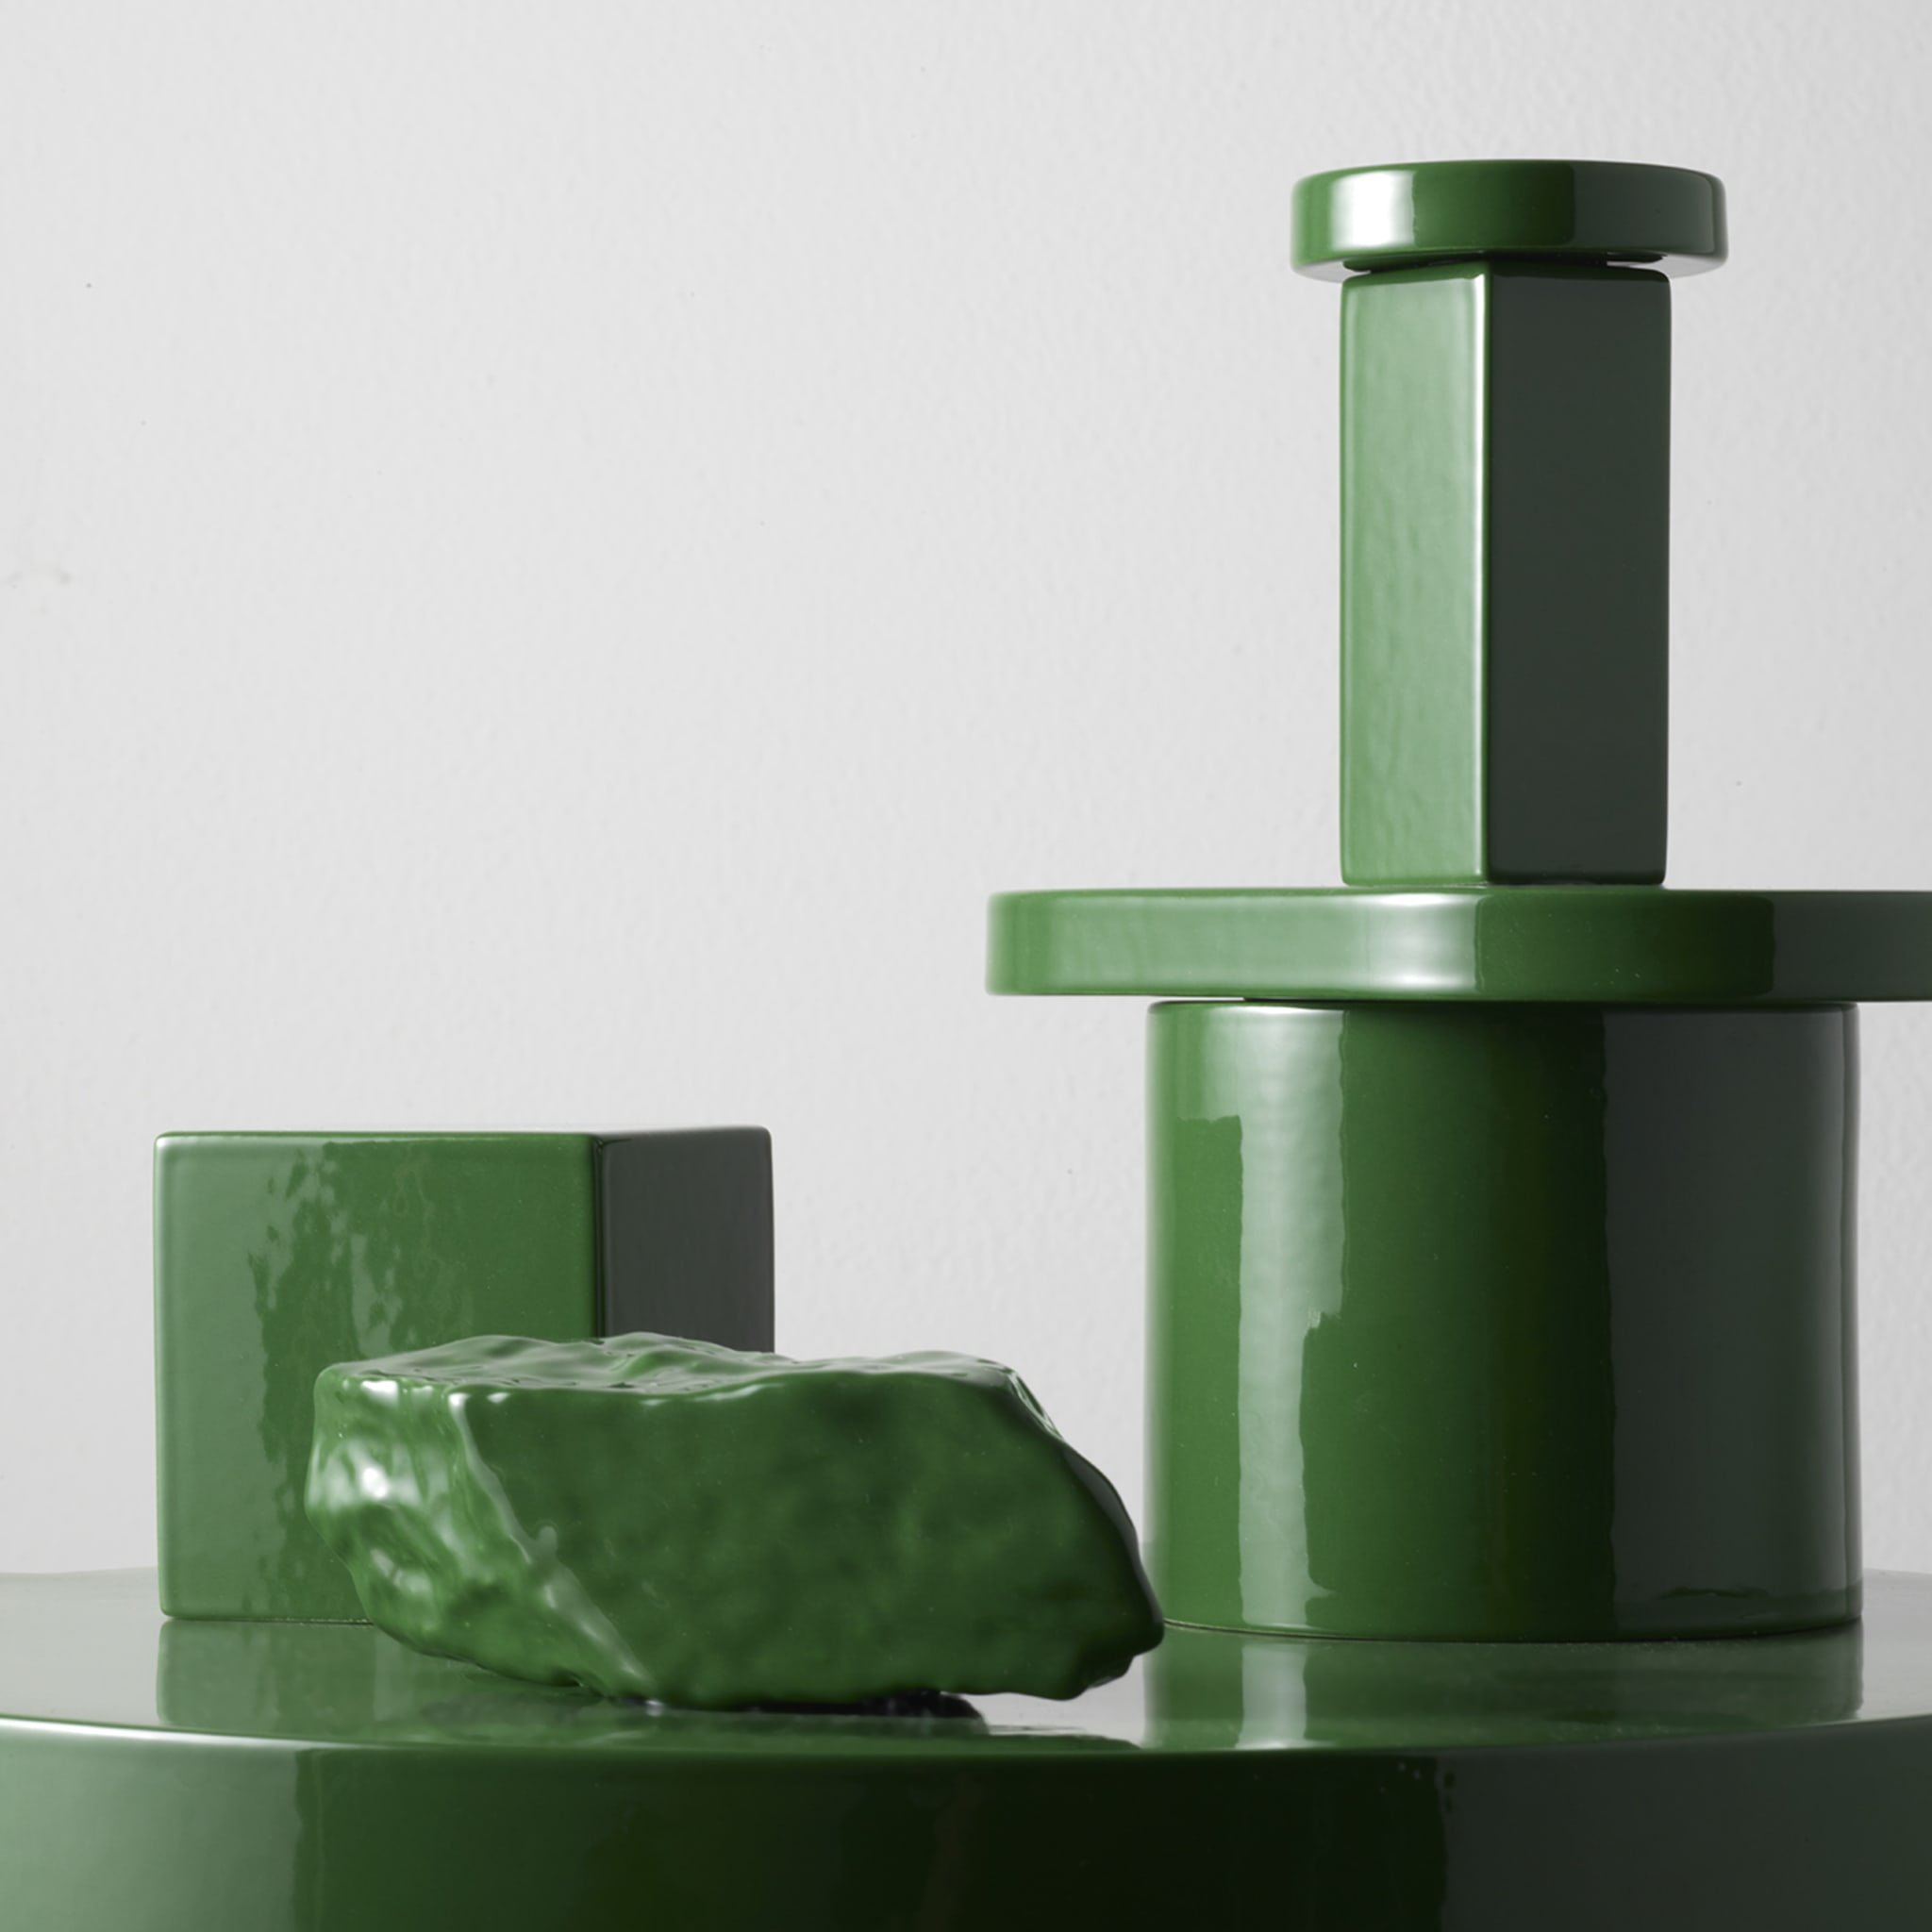 Paesaggi Round Green Sculpture by Nathalie Du Pasquier - Alternative view 2